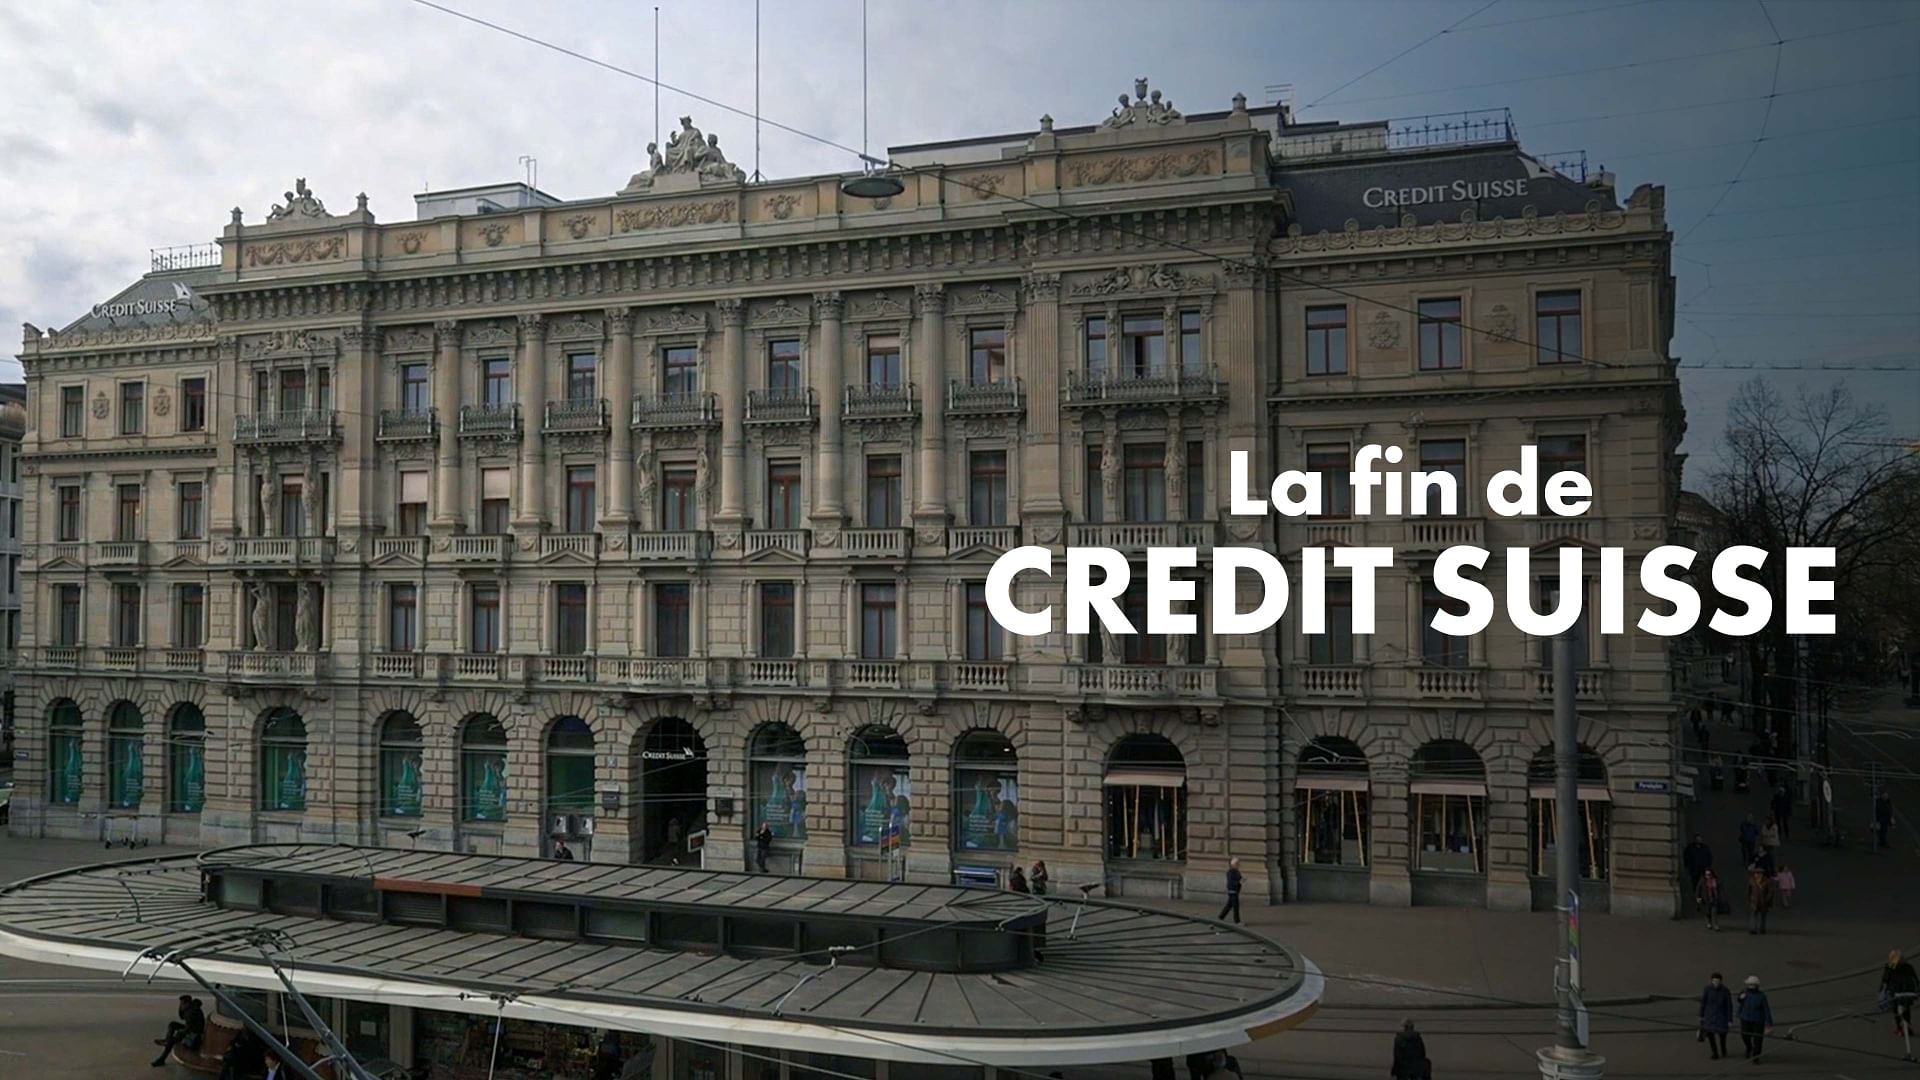 La fin de Credit Suisse - Entre responsabilité, culpabilité et colère